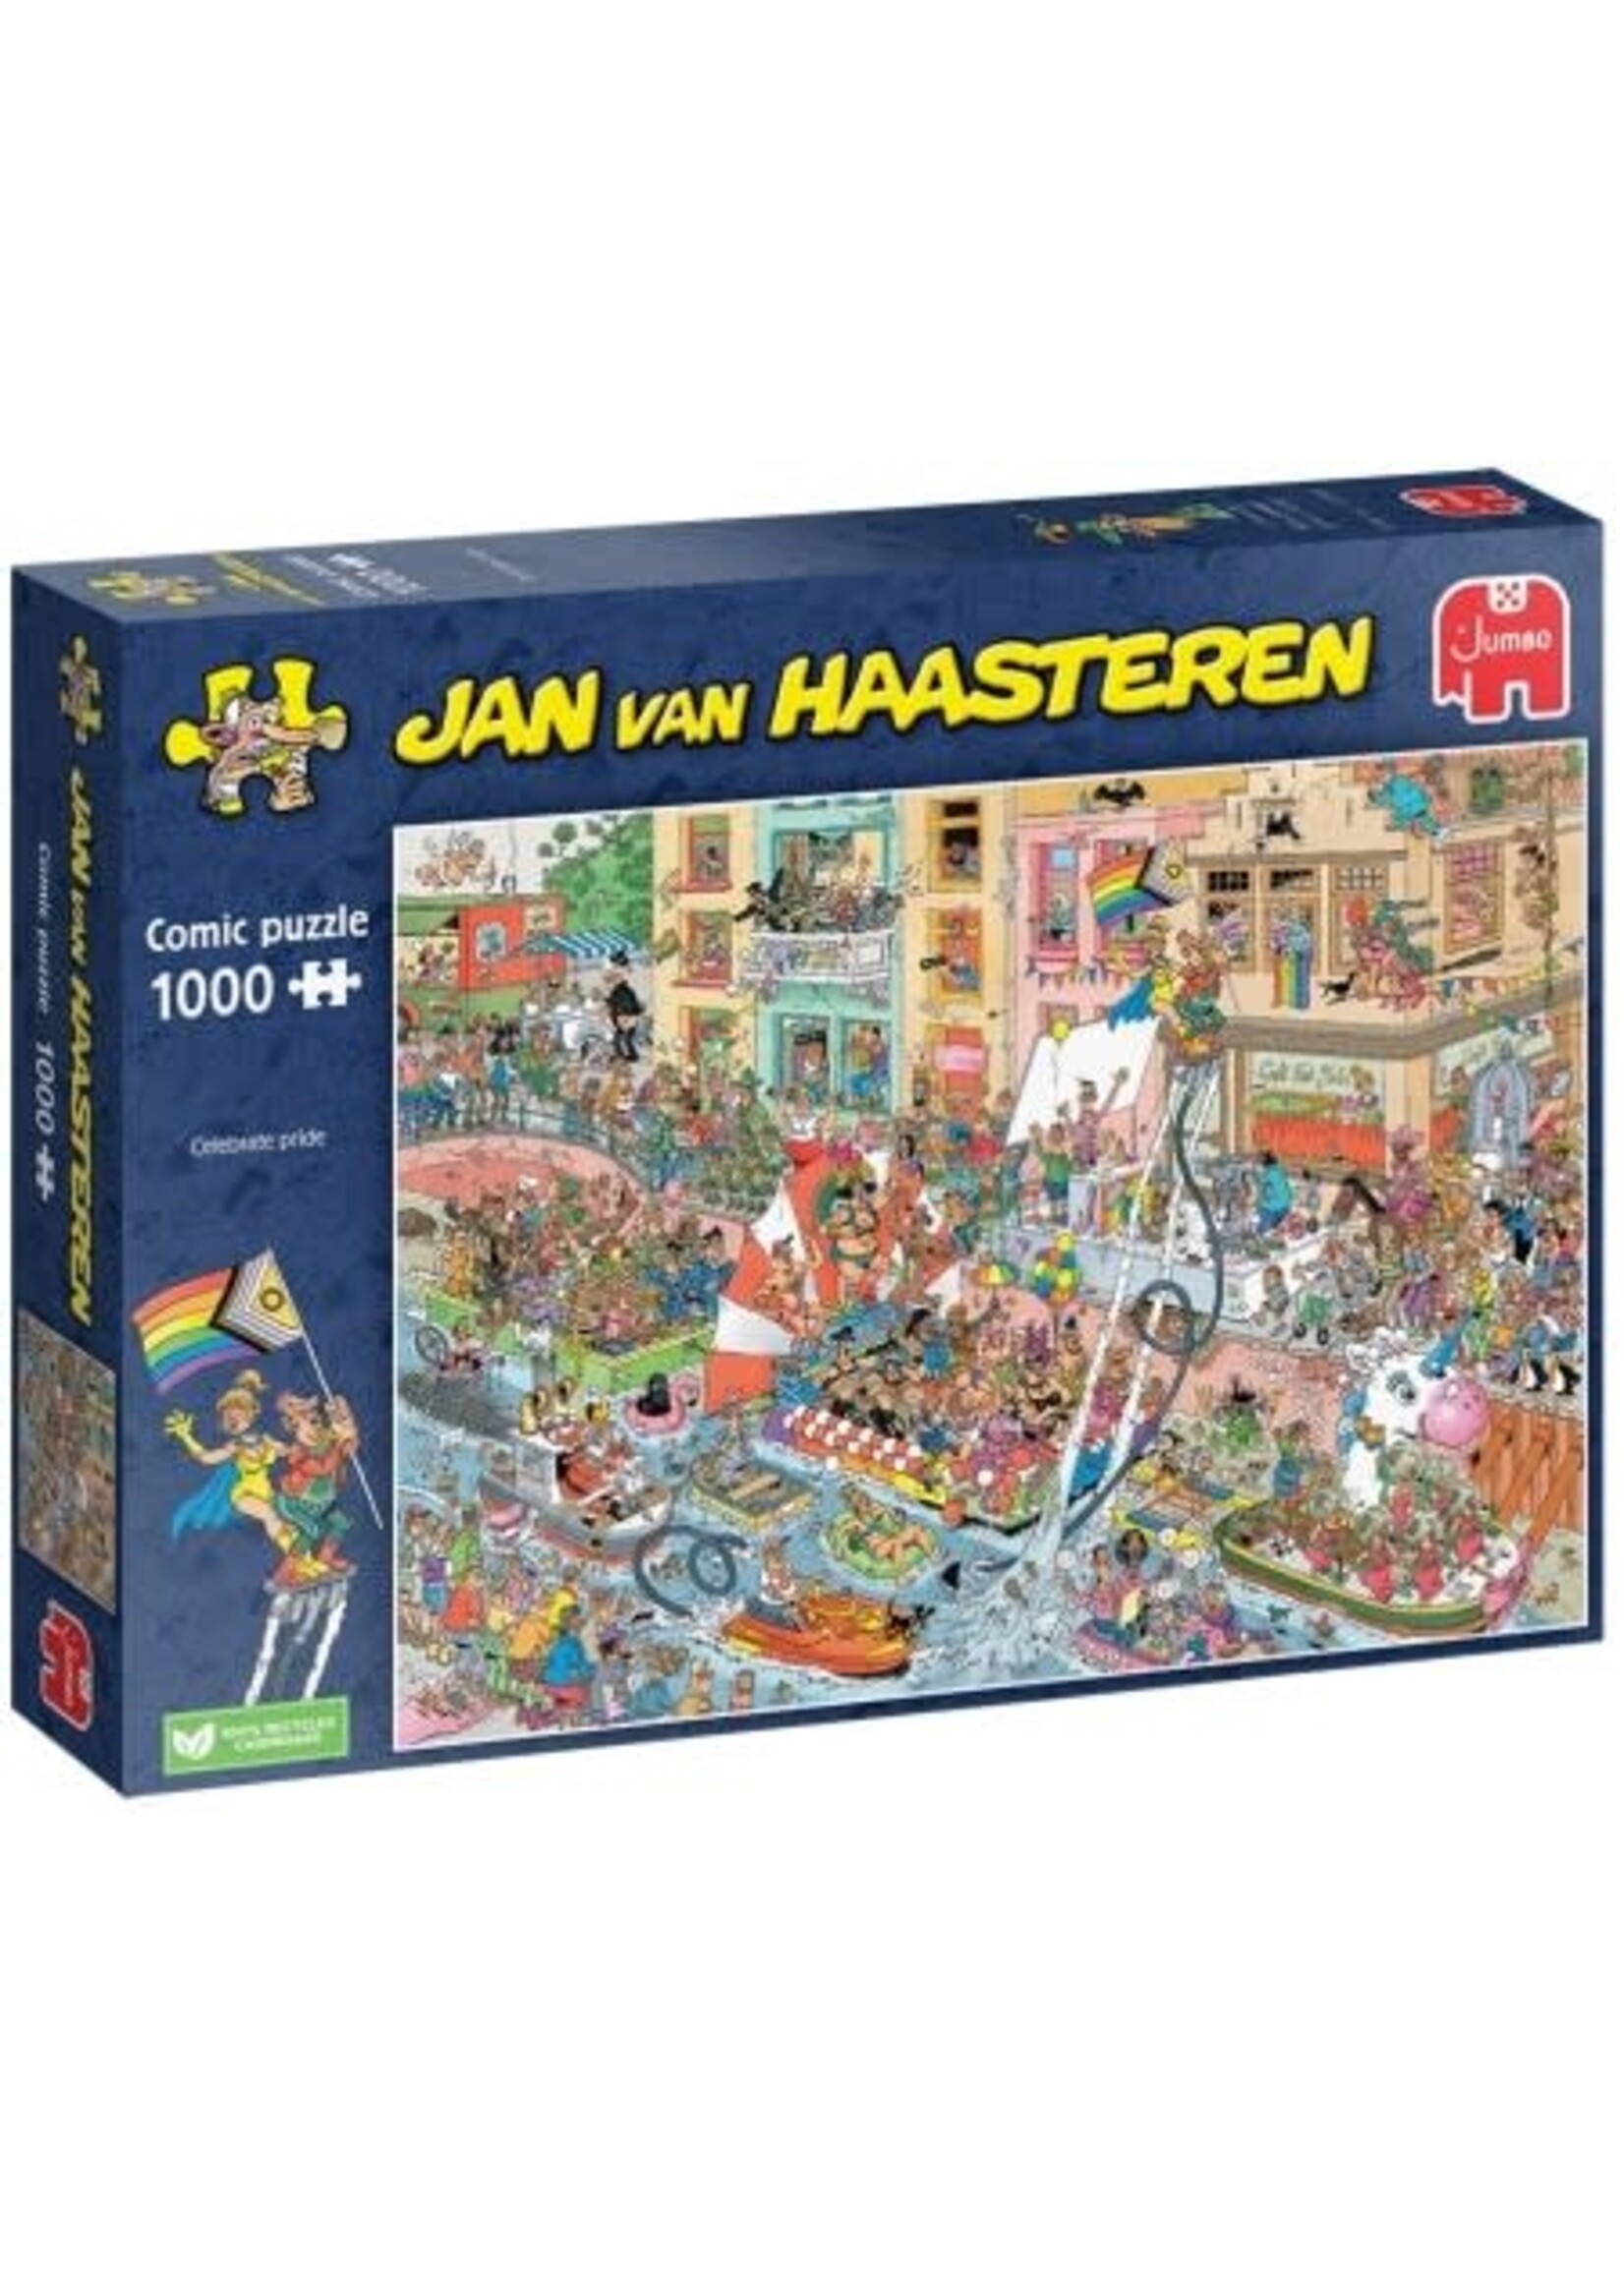 Jumbo PUZZEL Celebrate Pride! - Jan van Haasteren (1000)